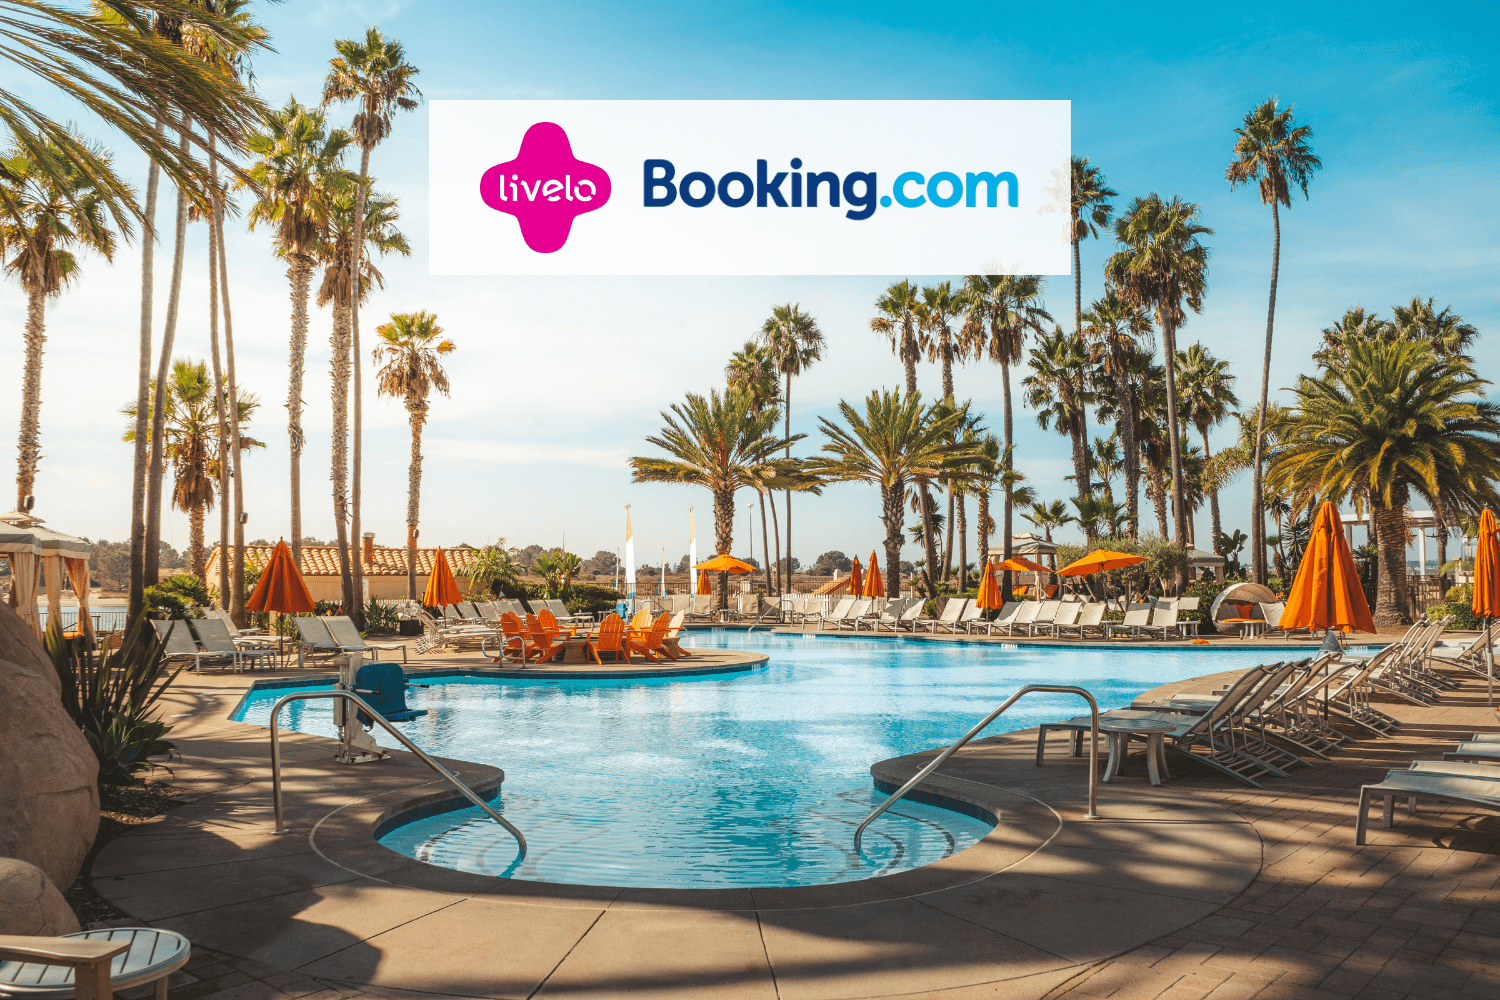 hotel com logo livelo booking